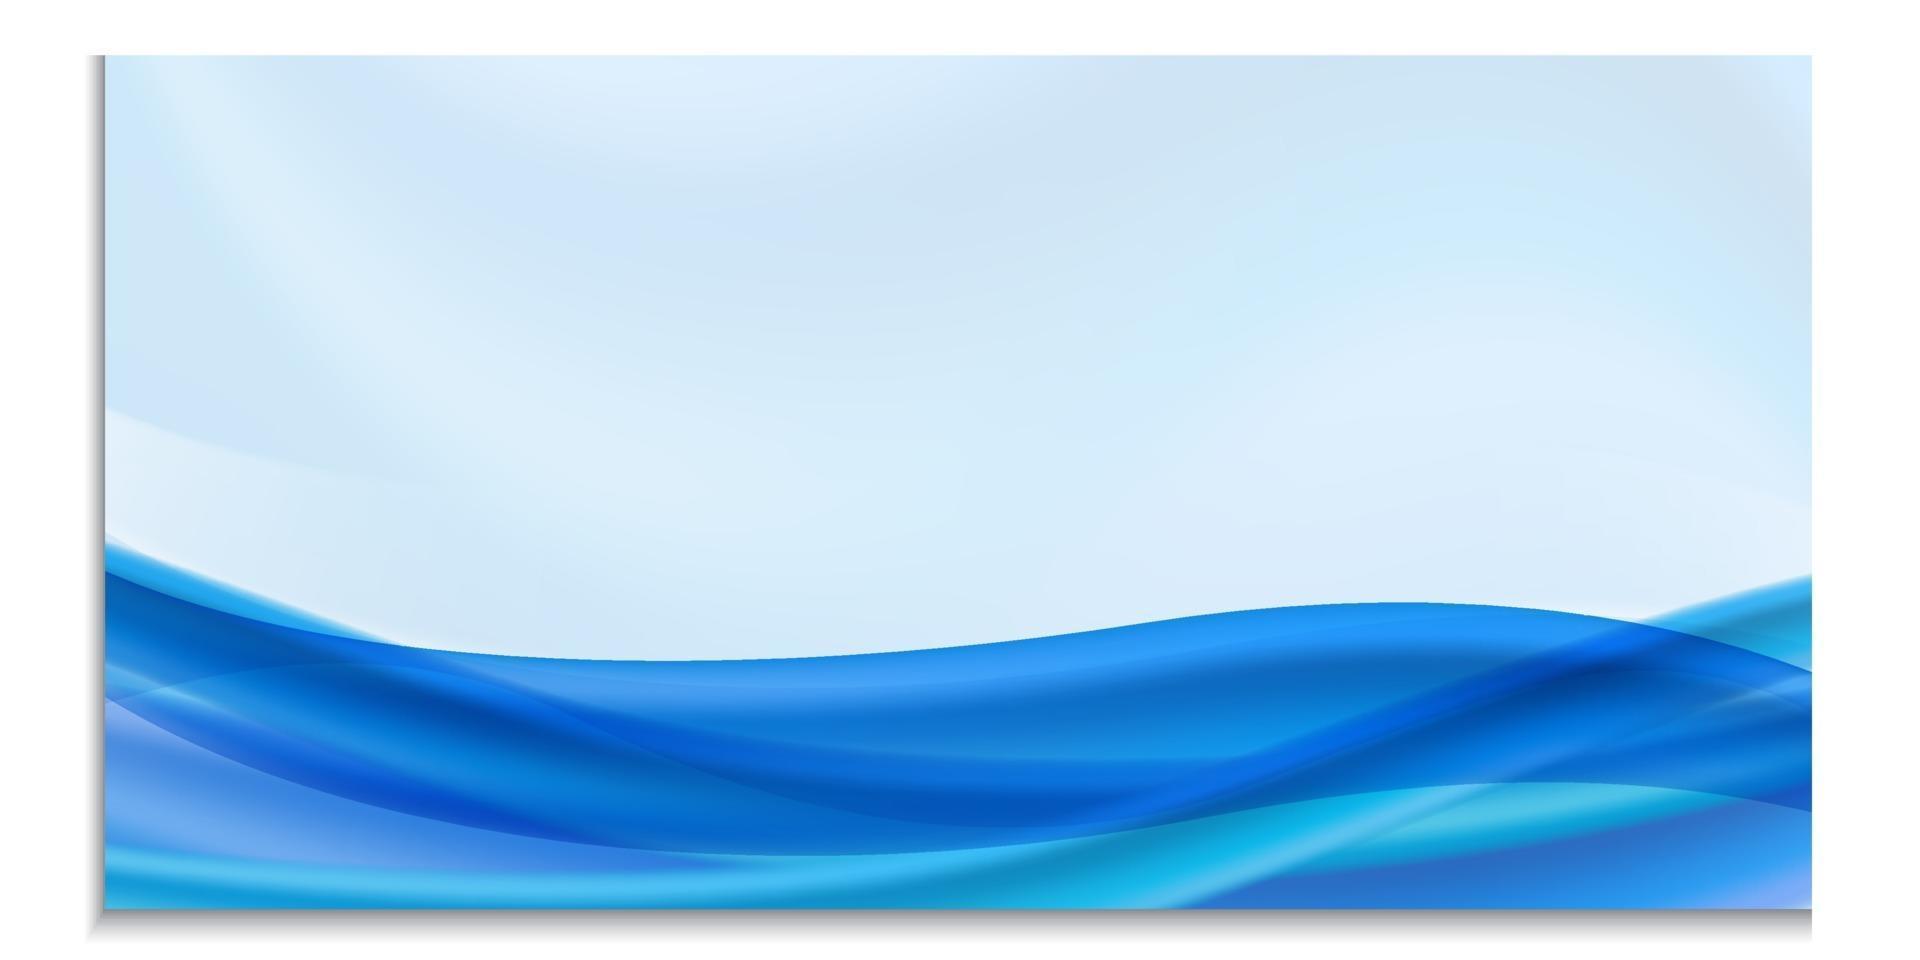 Vektor horizontale Vorlage für Design, Flyer, Einladung, Broschüre, Werbung, Banner. leer mit blauer Welle oder Fluss, helle fließende Formen im blauen Hintergrund mit Platz für Text